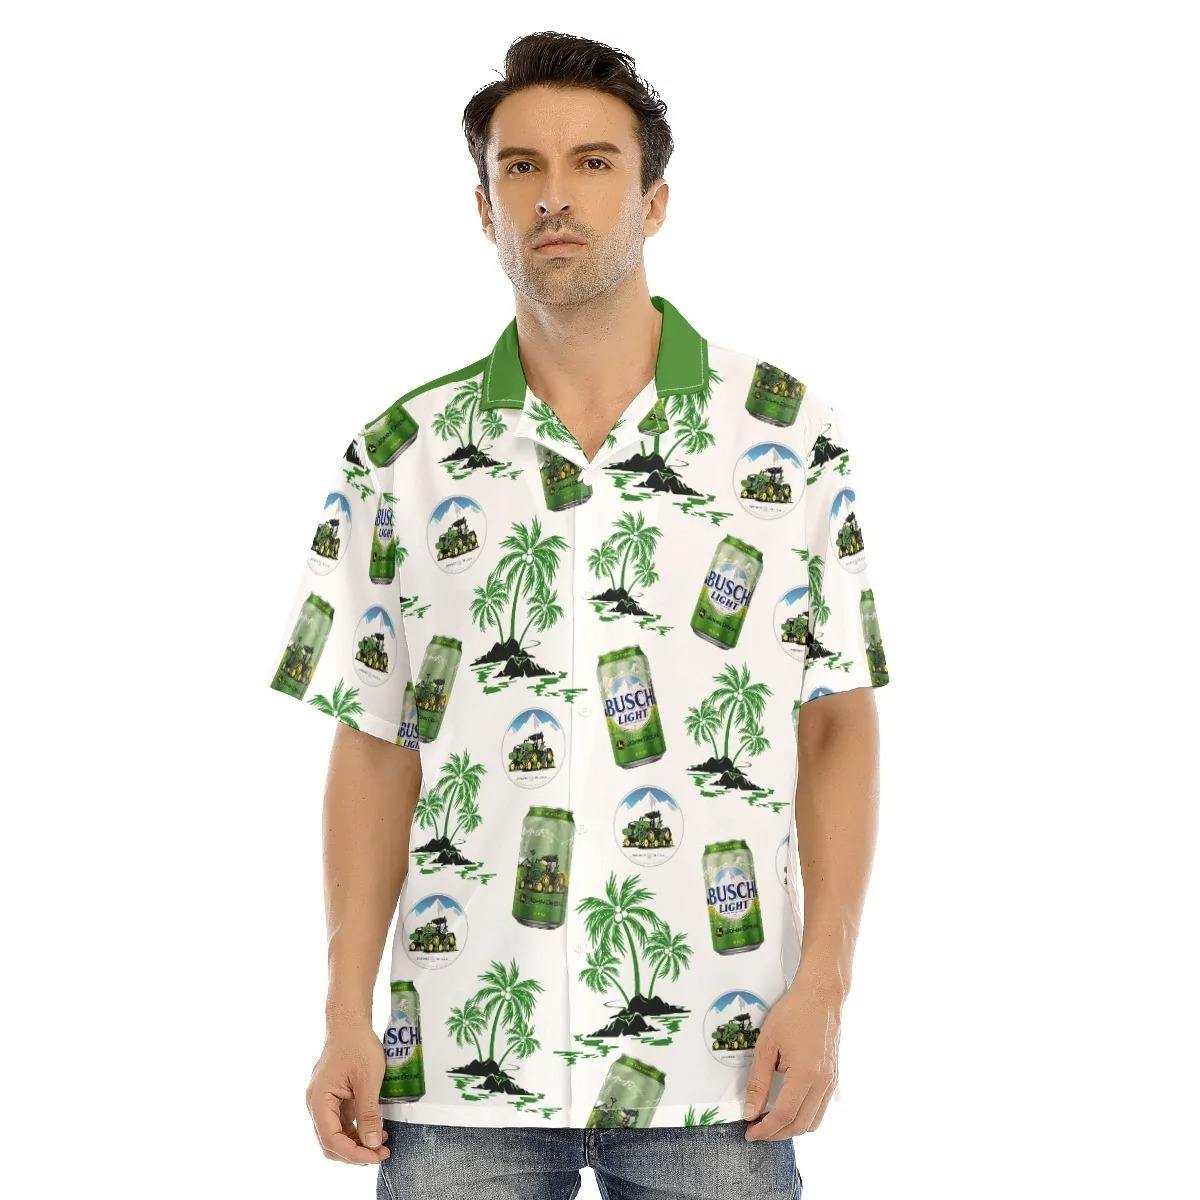 Busch Light John Deere Hawaiian Shirt Tropical Coconut Tree Beach Gift Beer Lovers